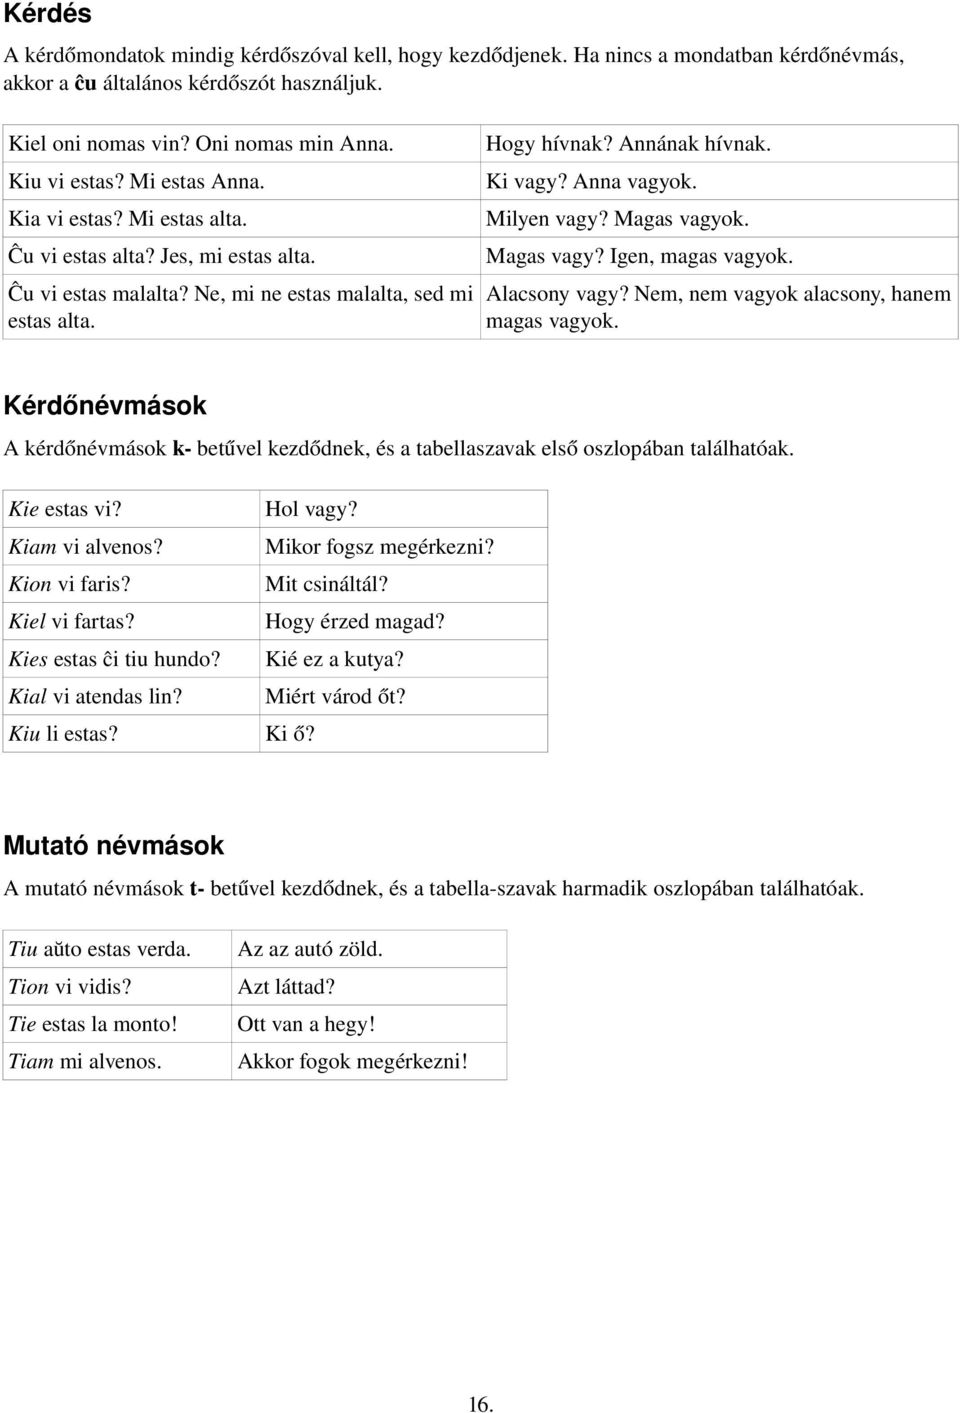 Az eszperantó nyelv rövid nyelvtana. Összeállította : Paár Norbert - PDF  Free Download